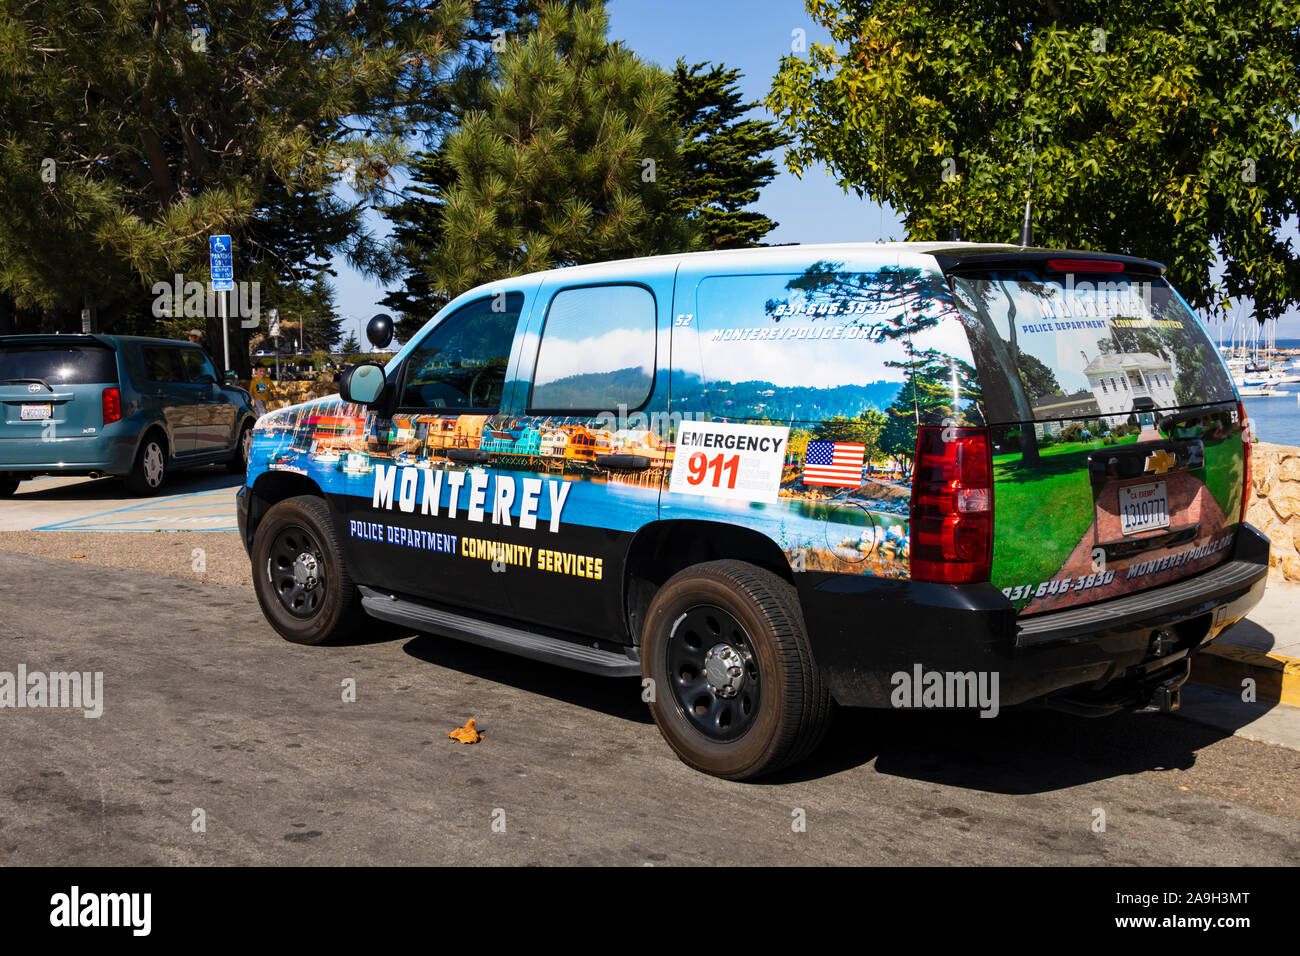 Service de police de Monterey, véhicule de service communautaire, Monterey, Californie, États-Unis d'Amérique Banque D'Images